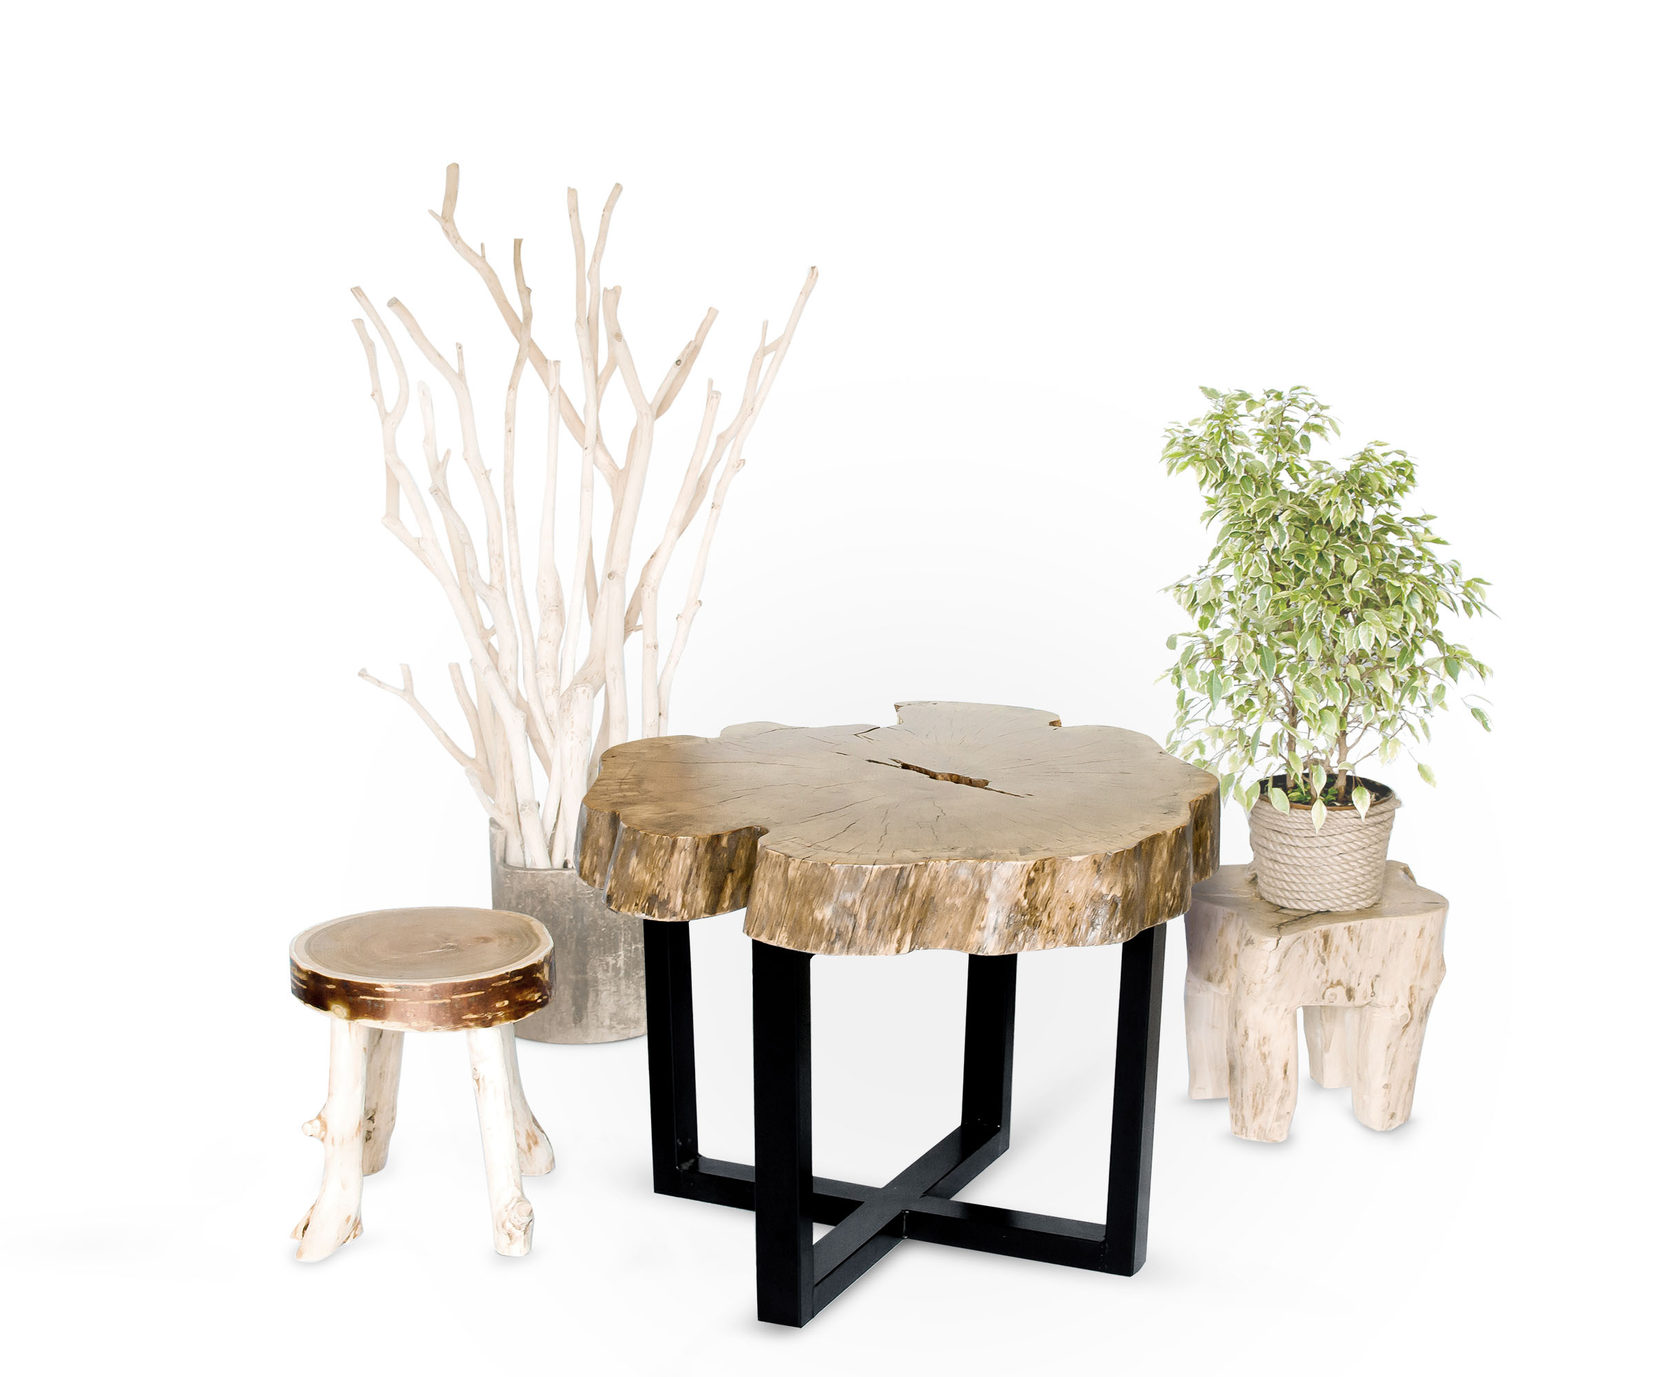 Стол из спилов дерева своими руками: инструкция по изготовлению обеденного стола